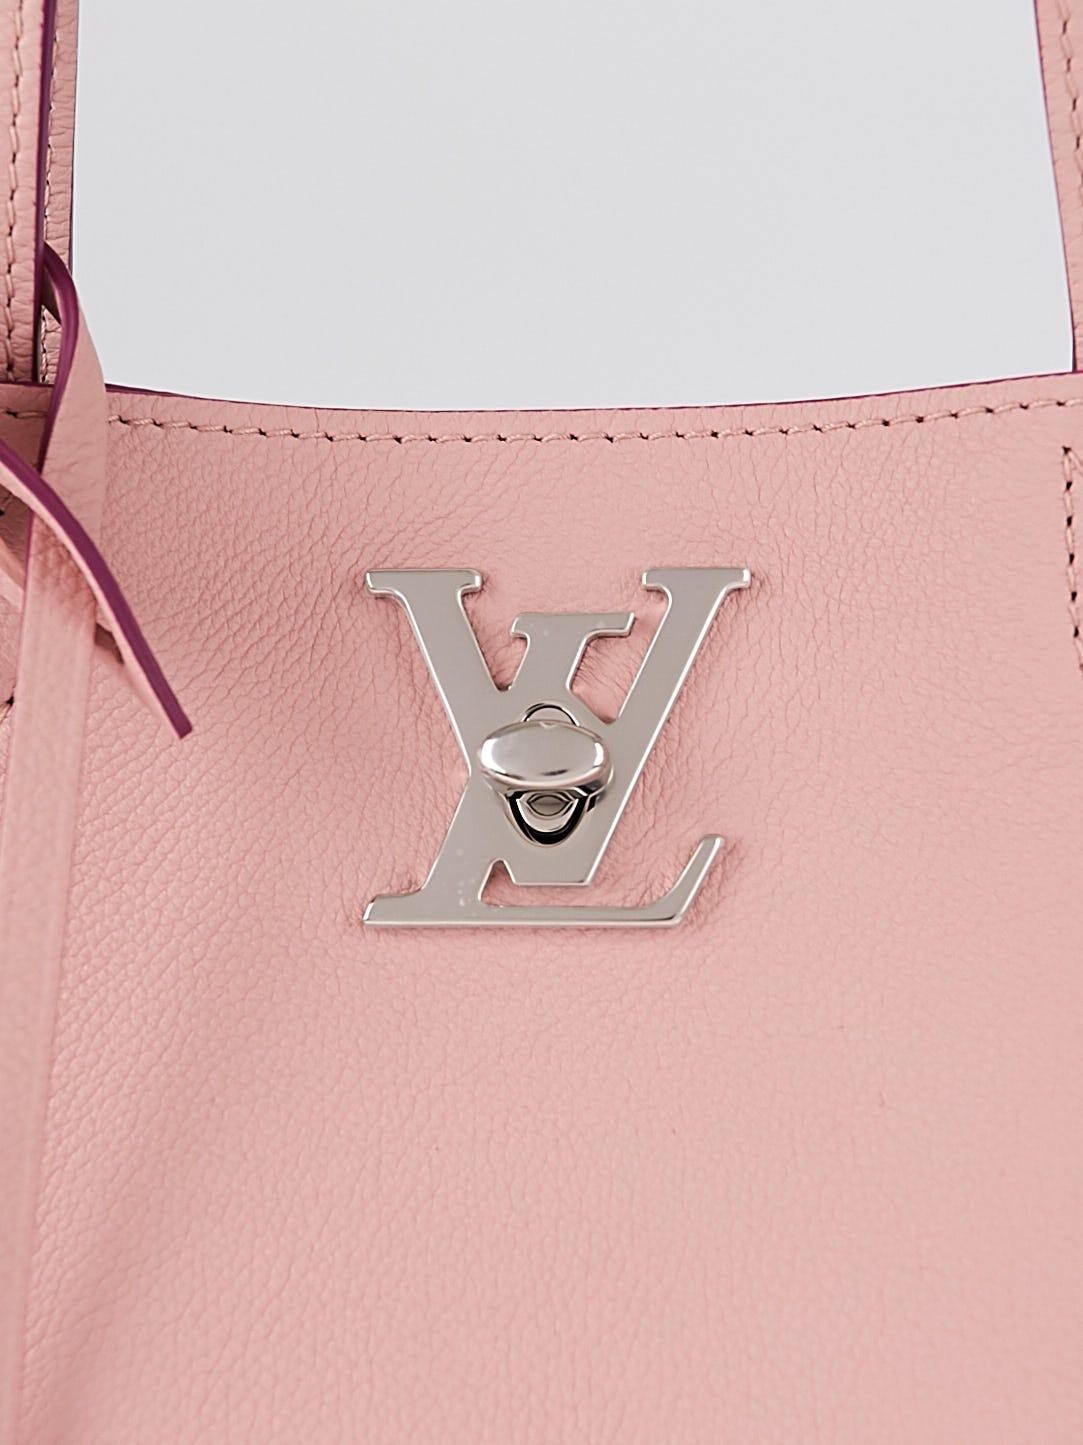 Louis Vuitton - Authenticated Sutton Handbag - Patent Leather Purple Plain for Women, Very Good Condition